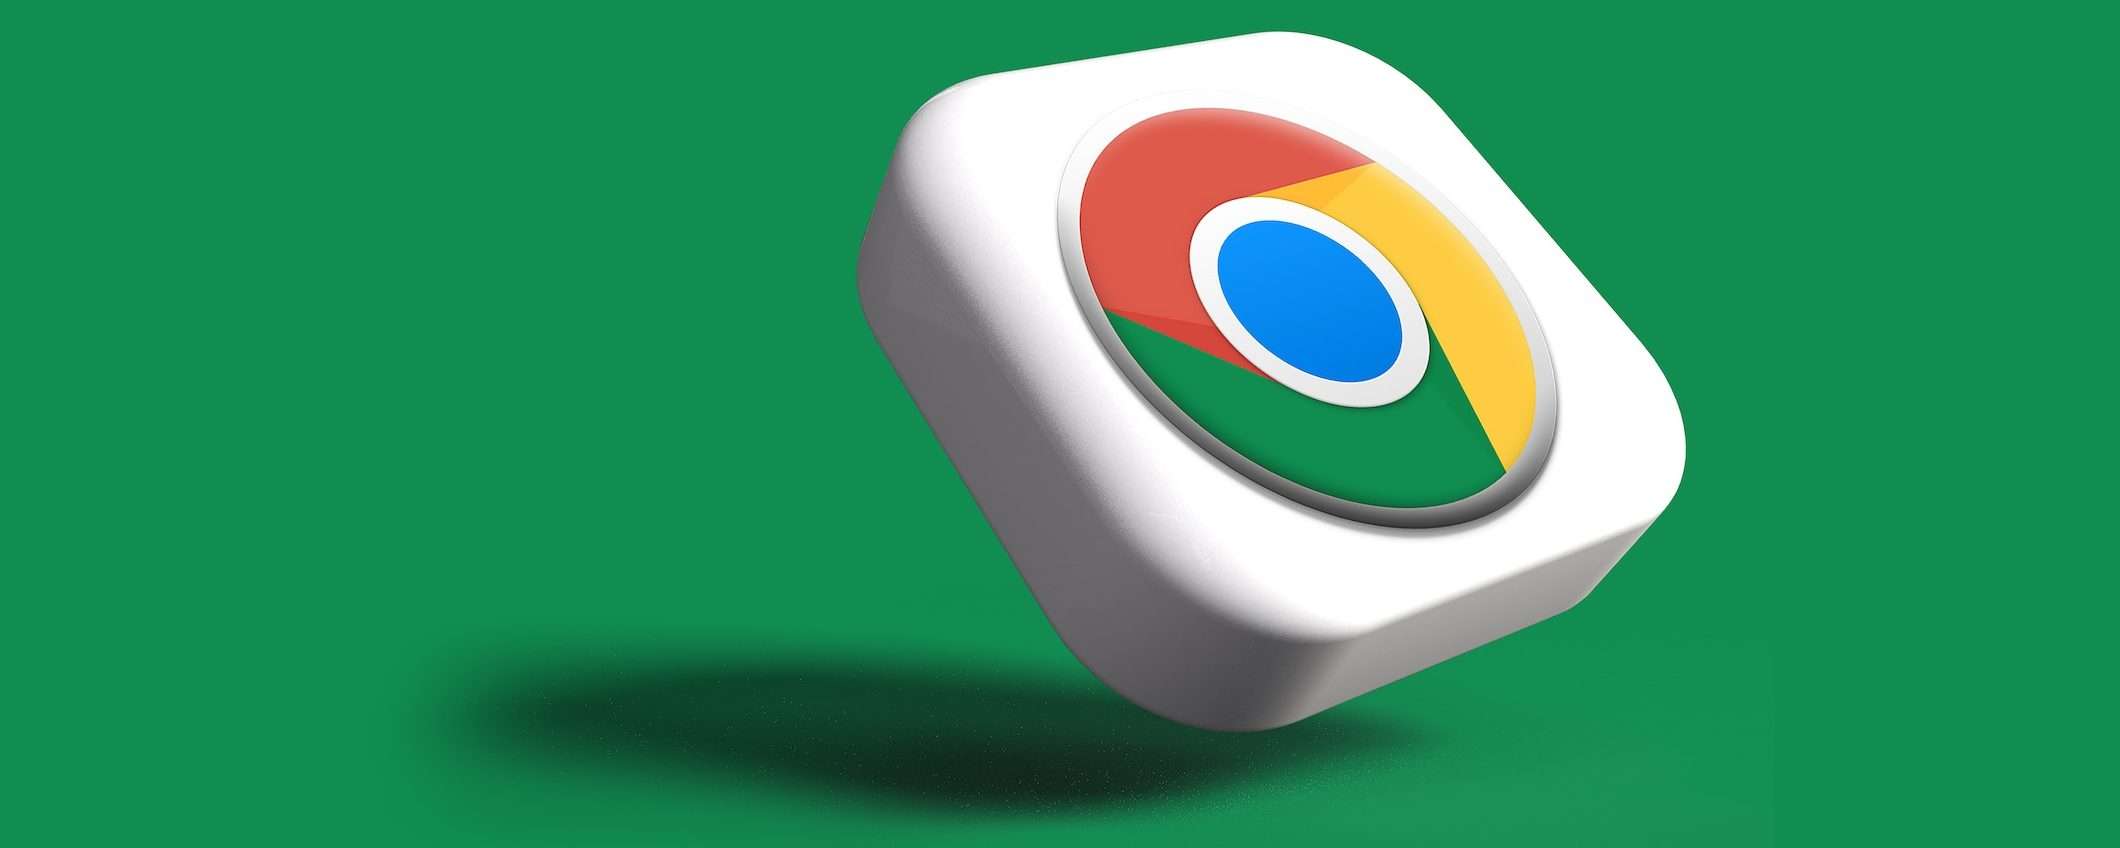 Chrome: è più facile disattivare le notifiche dei siti su Android